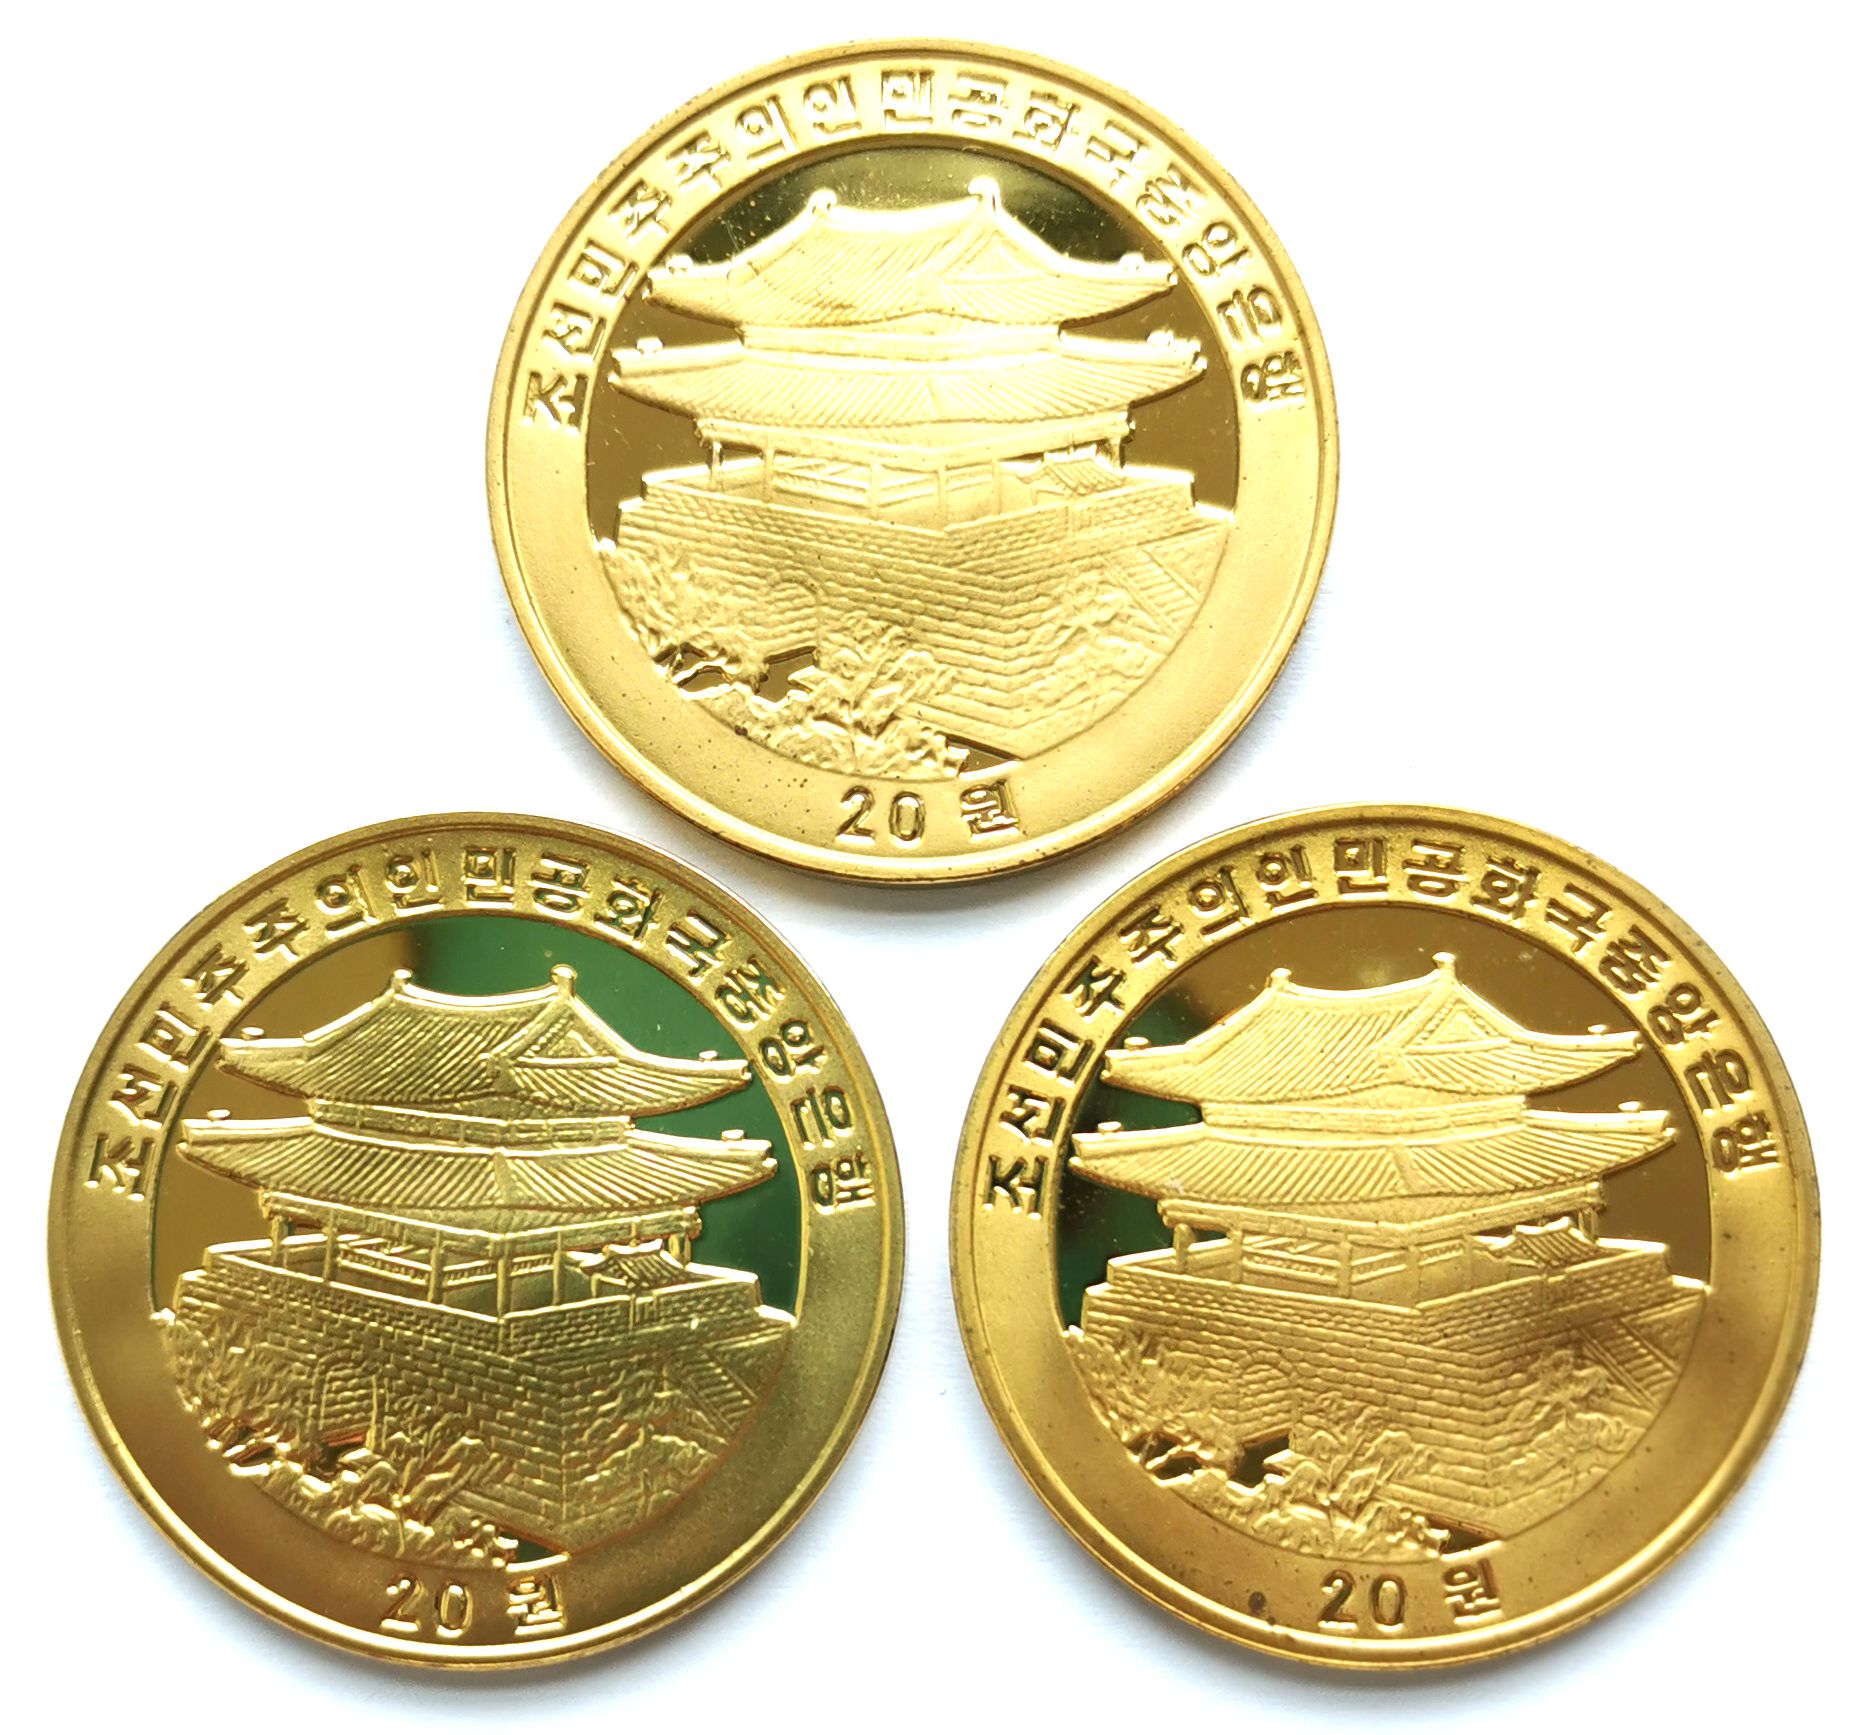 L3152, Koryo Generals, Korea 3 Pcs Commemorative Coins, 2003